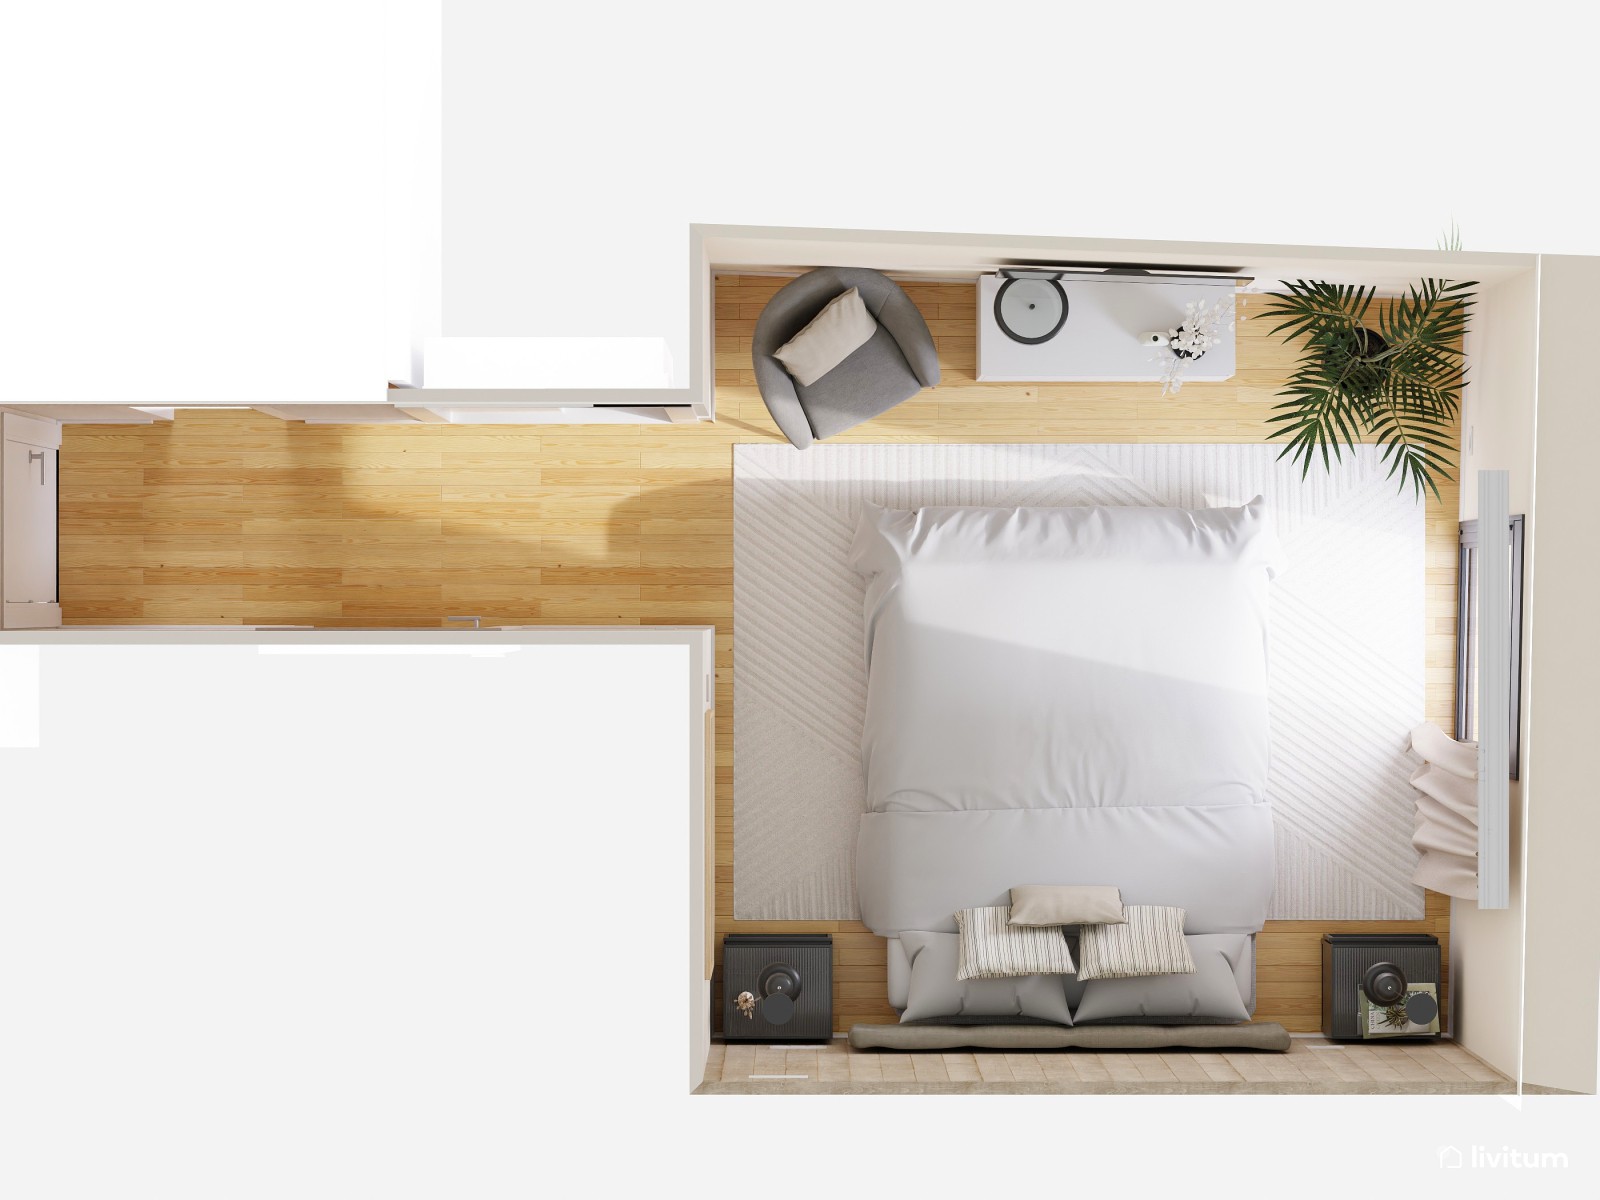 Dormitorio moderno con revestimiento de madera